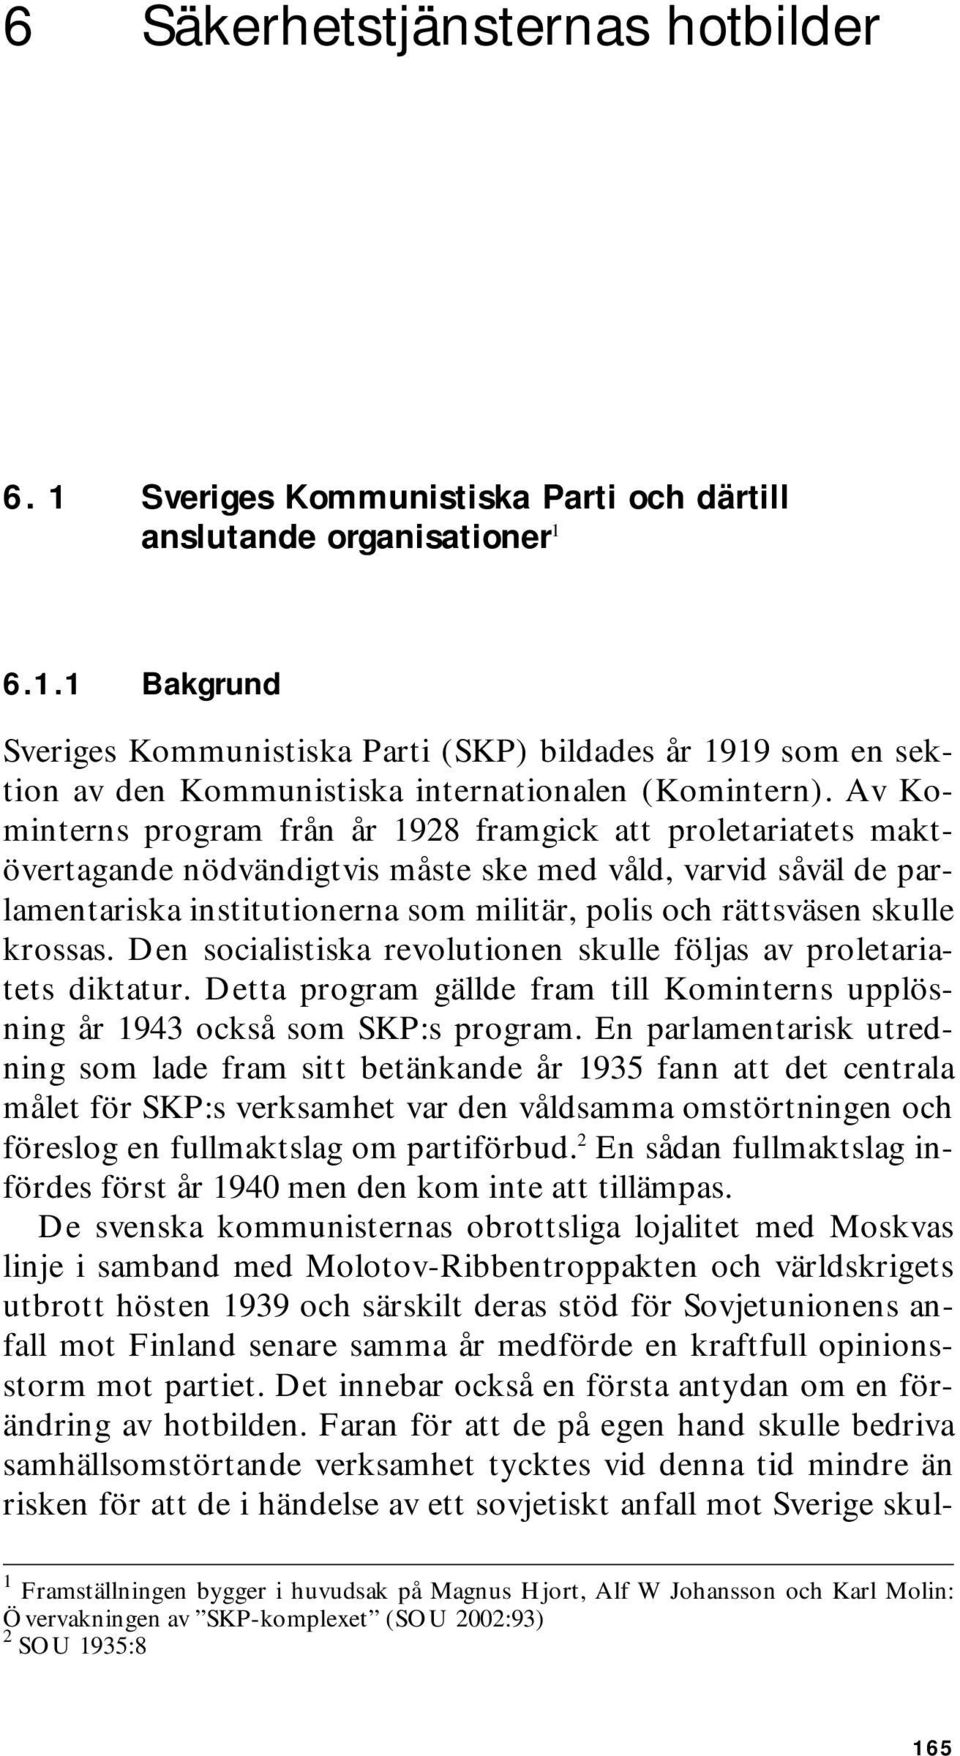 skulle krossas. Den socialistiska revolutionen skulle följas av proletariatets diktatur. Detta program gällde fram till Kominterns upplösning år 1943 också som SKP:s program.